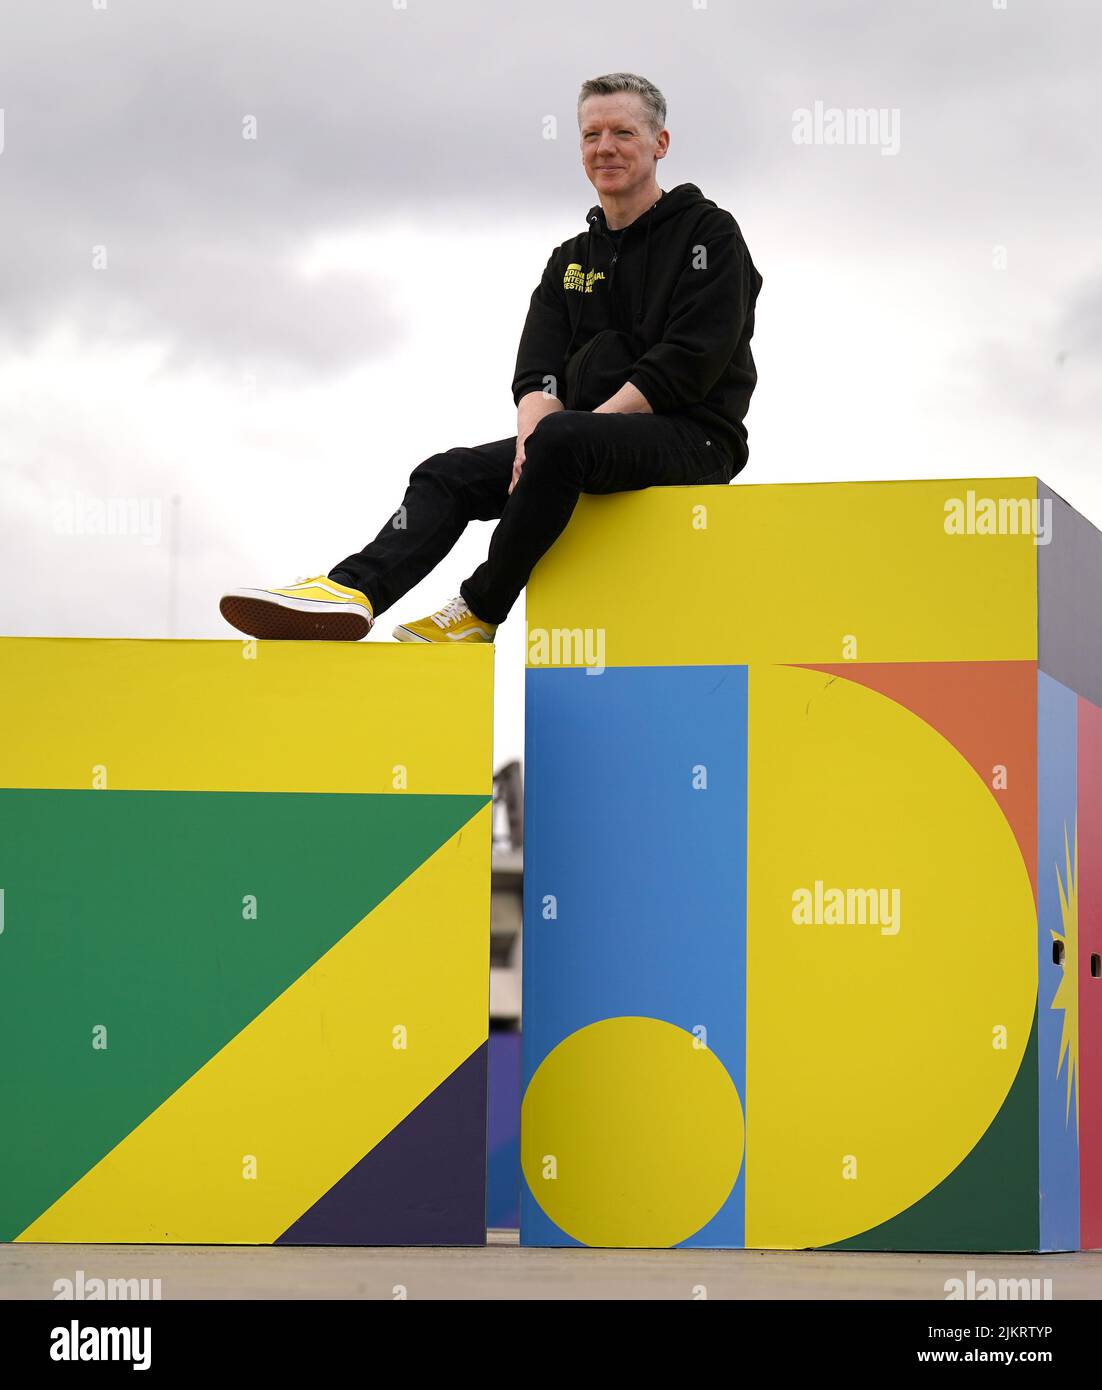 El director del Festival Fergus Linehan durante el lanzamiento del Festival Internacional de Edimburgo 75th en el estadio Murrayfield de Edimburgo. Fecha de la foto: Miércoles 3 de agosto de 2022. Foto de stock